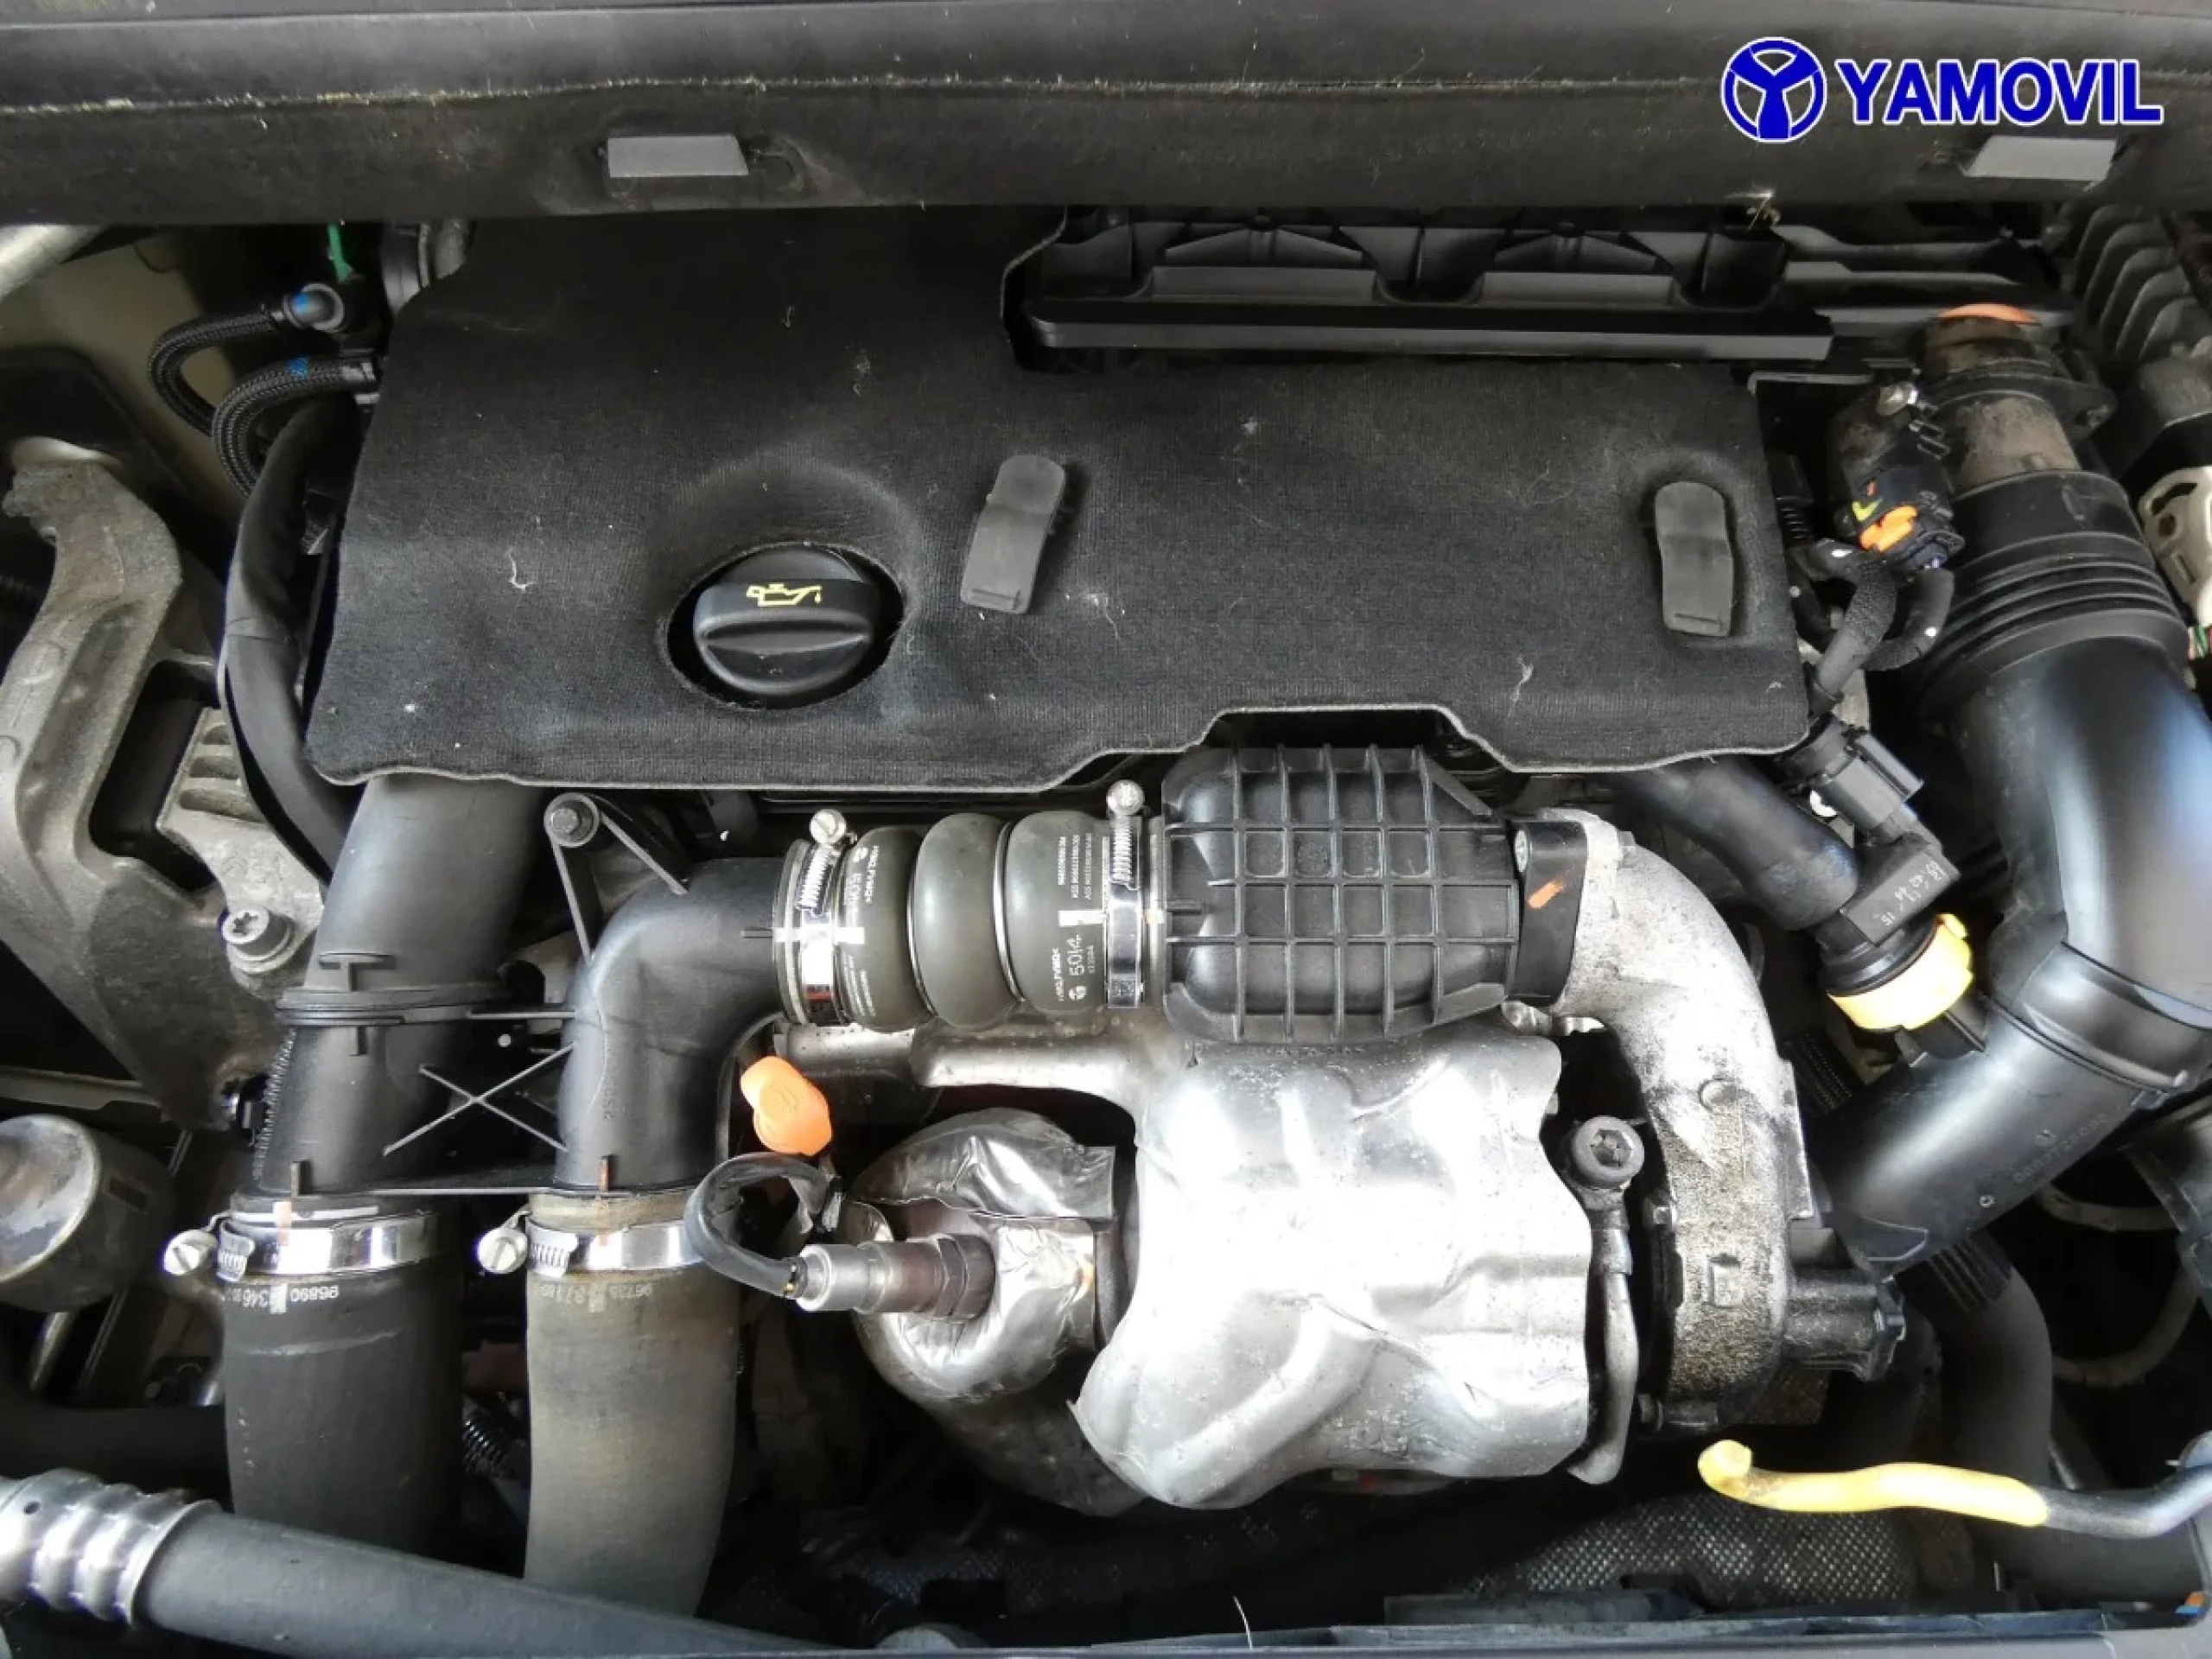 Citroen Grand C4 Picasso 1.6 e-HDI Intensive 85 kW (115 CV) - Foto 8